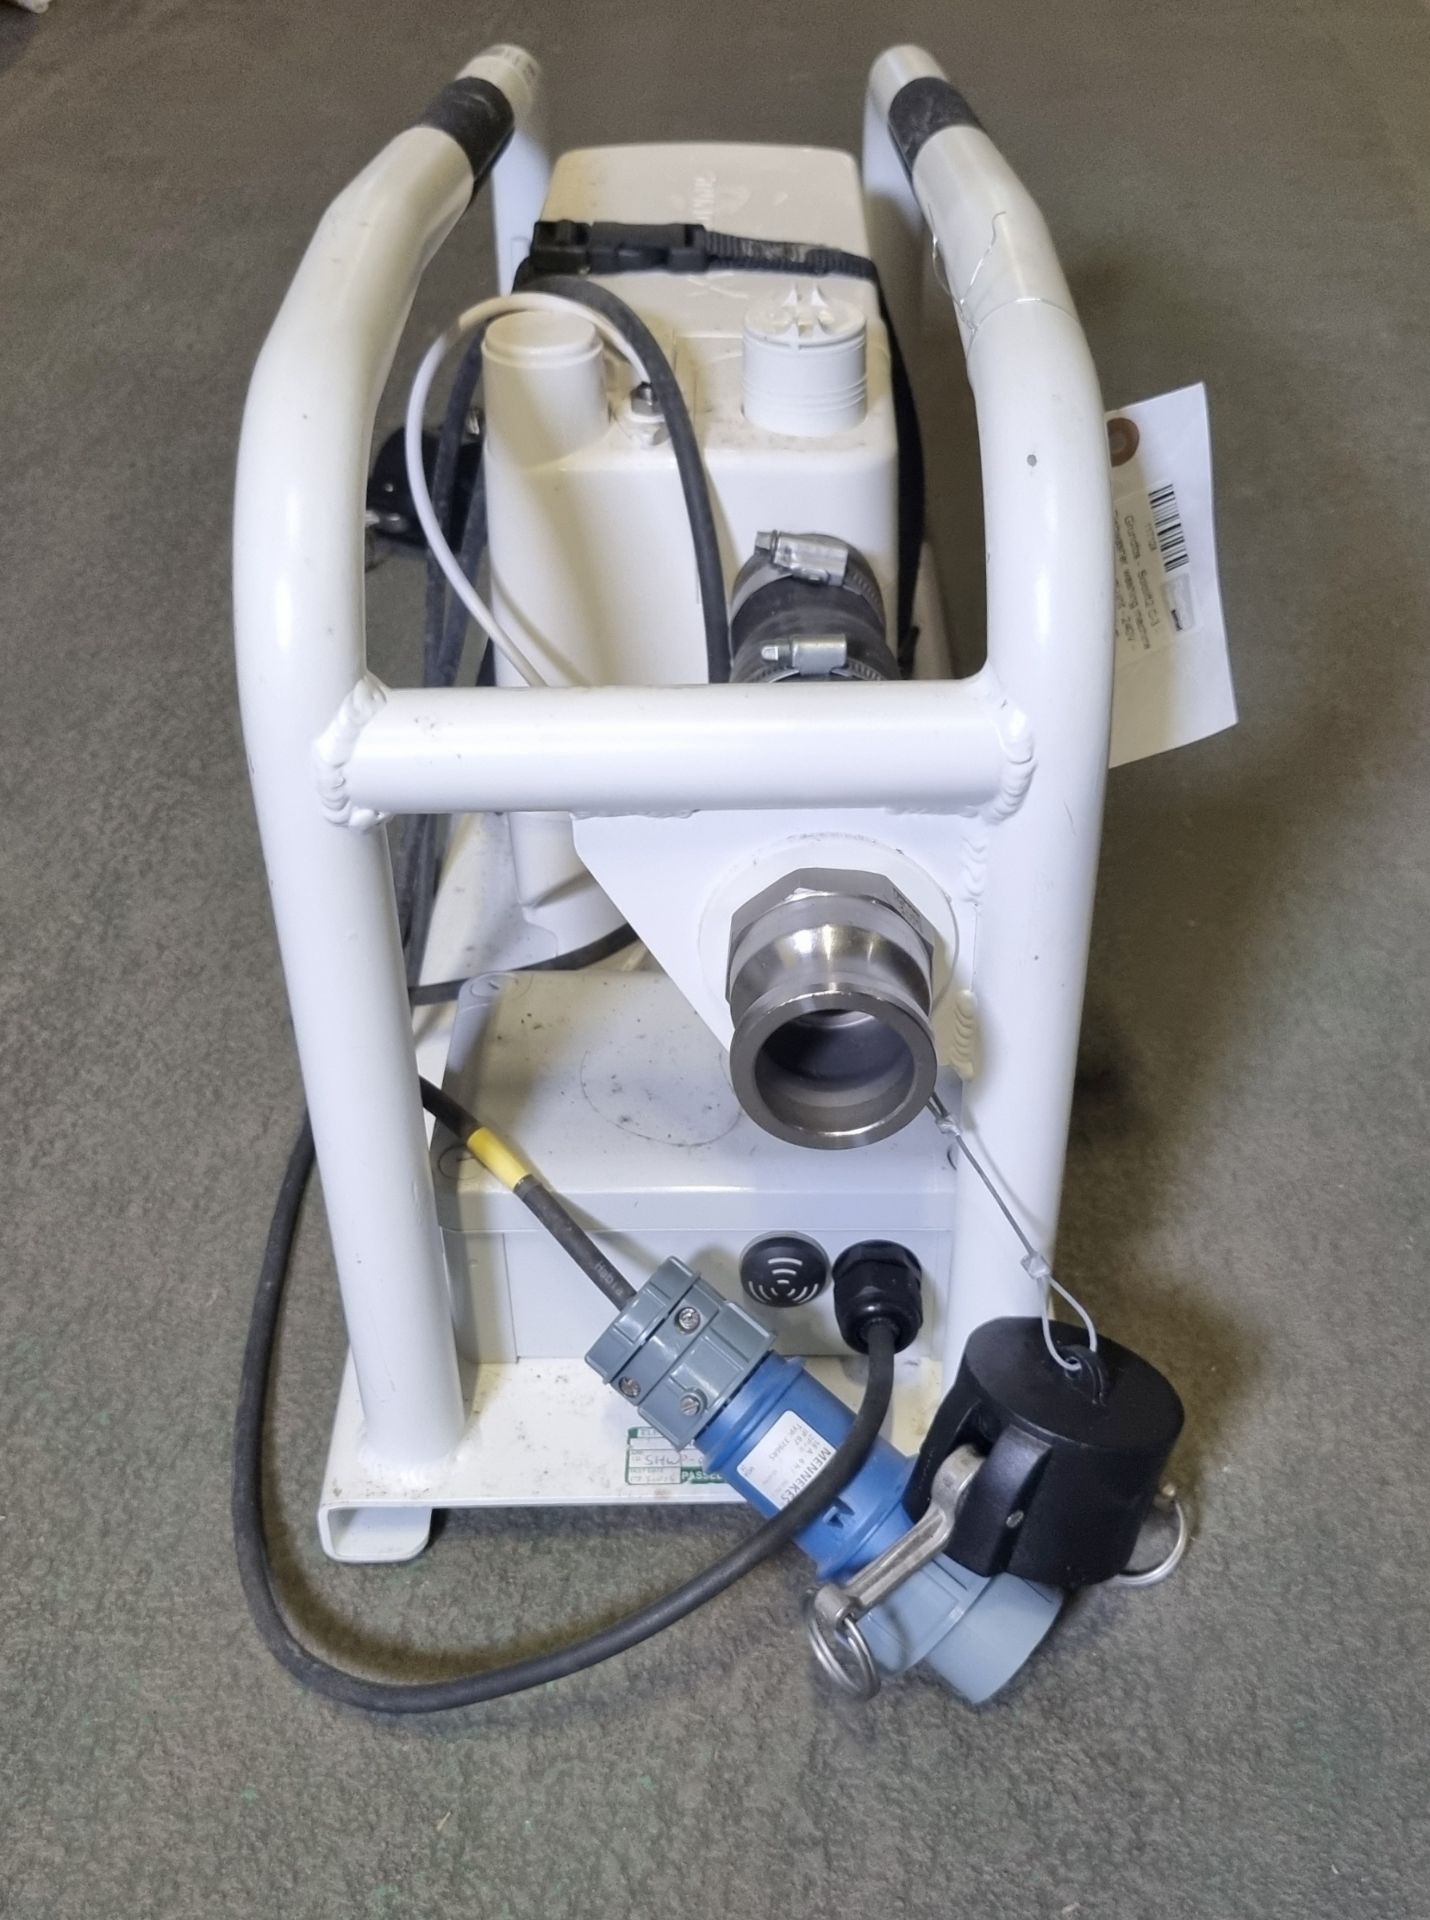 Grundfos - Sololift2 C-3 - Dishwasher, washing machine waste removal unit - 240V - Image 3 of 4